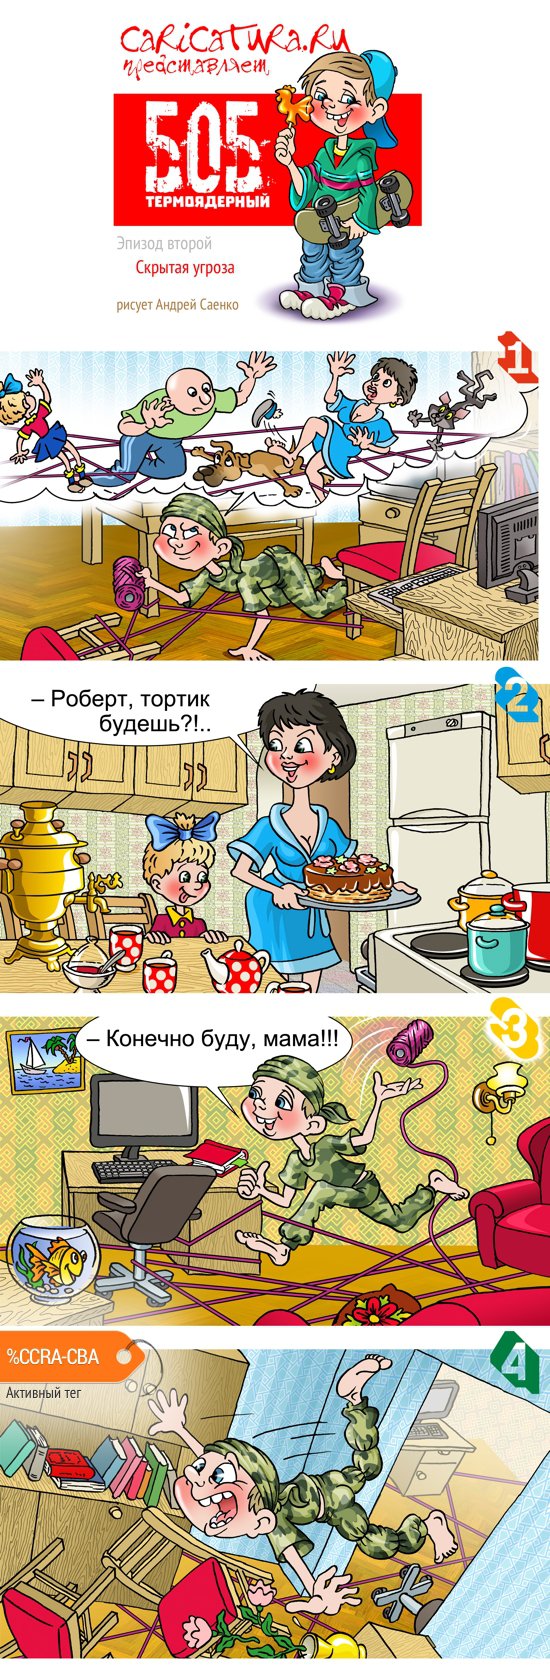 Комикс "Боб термоядерный. Скрытая угроза", Агентство Карикатура.ру